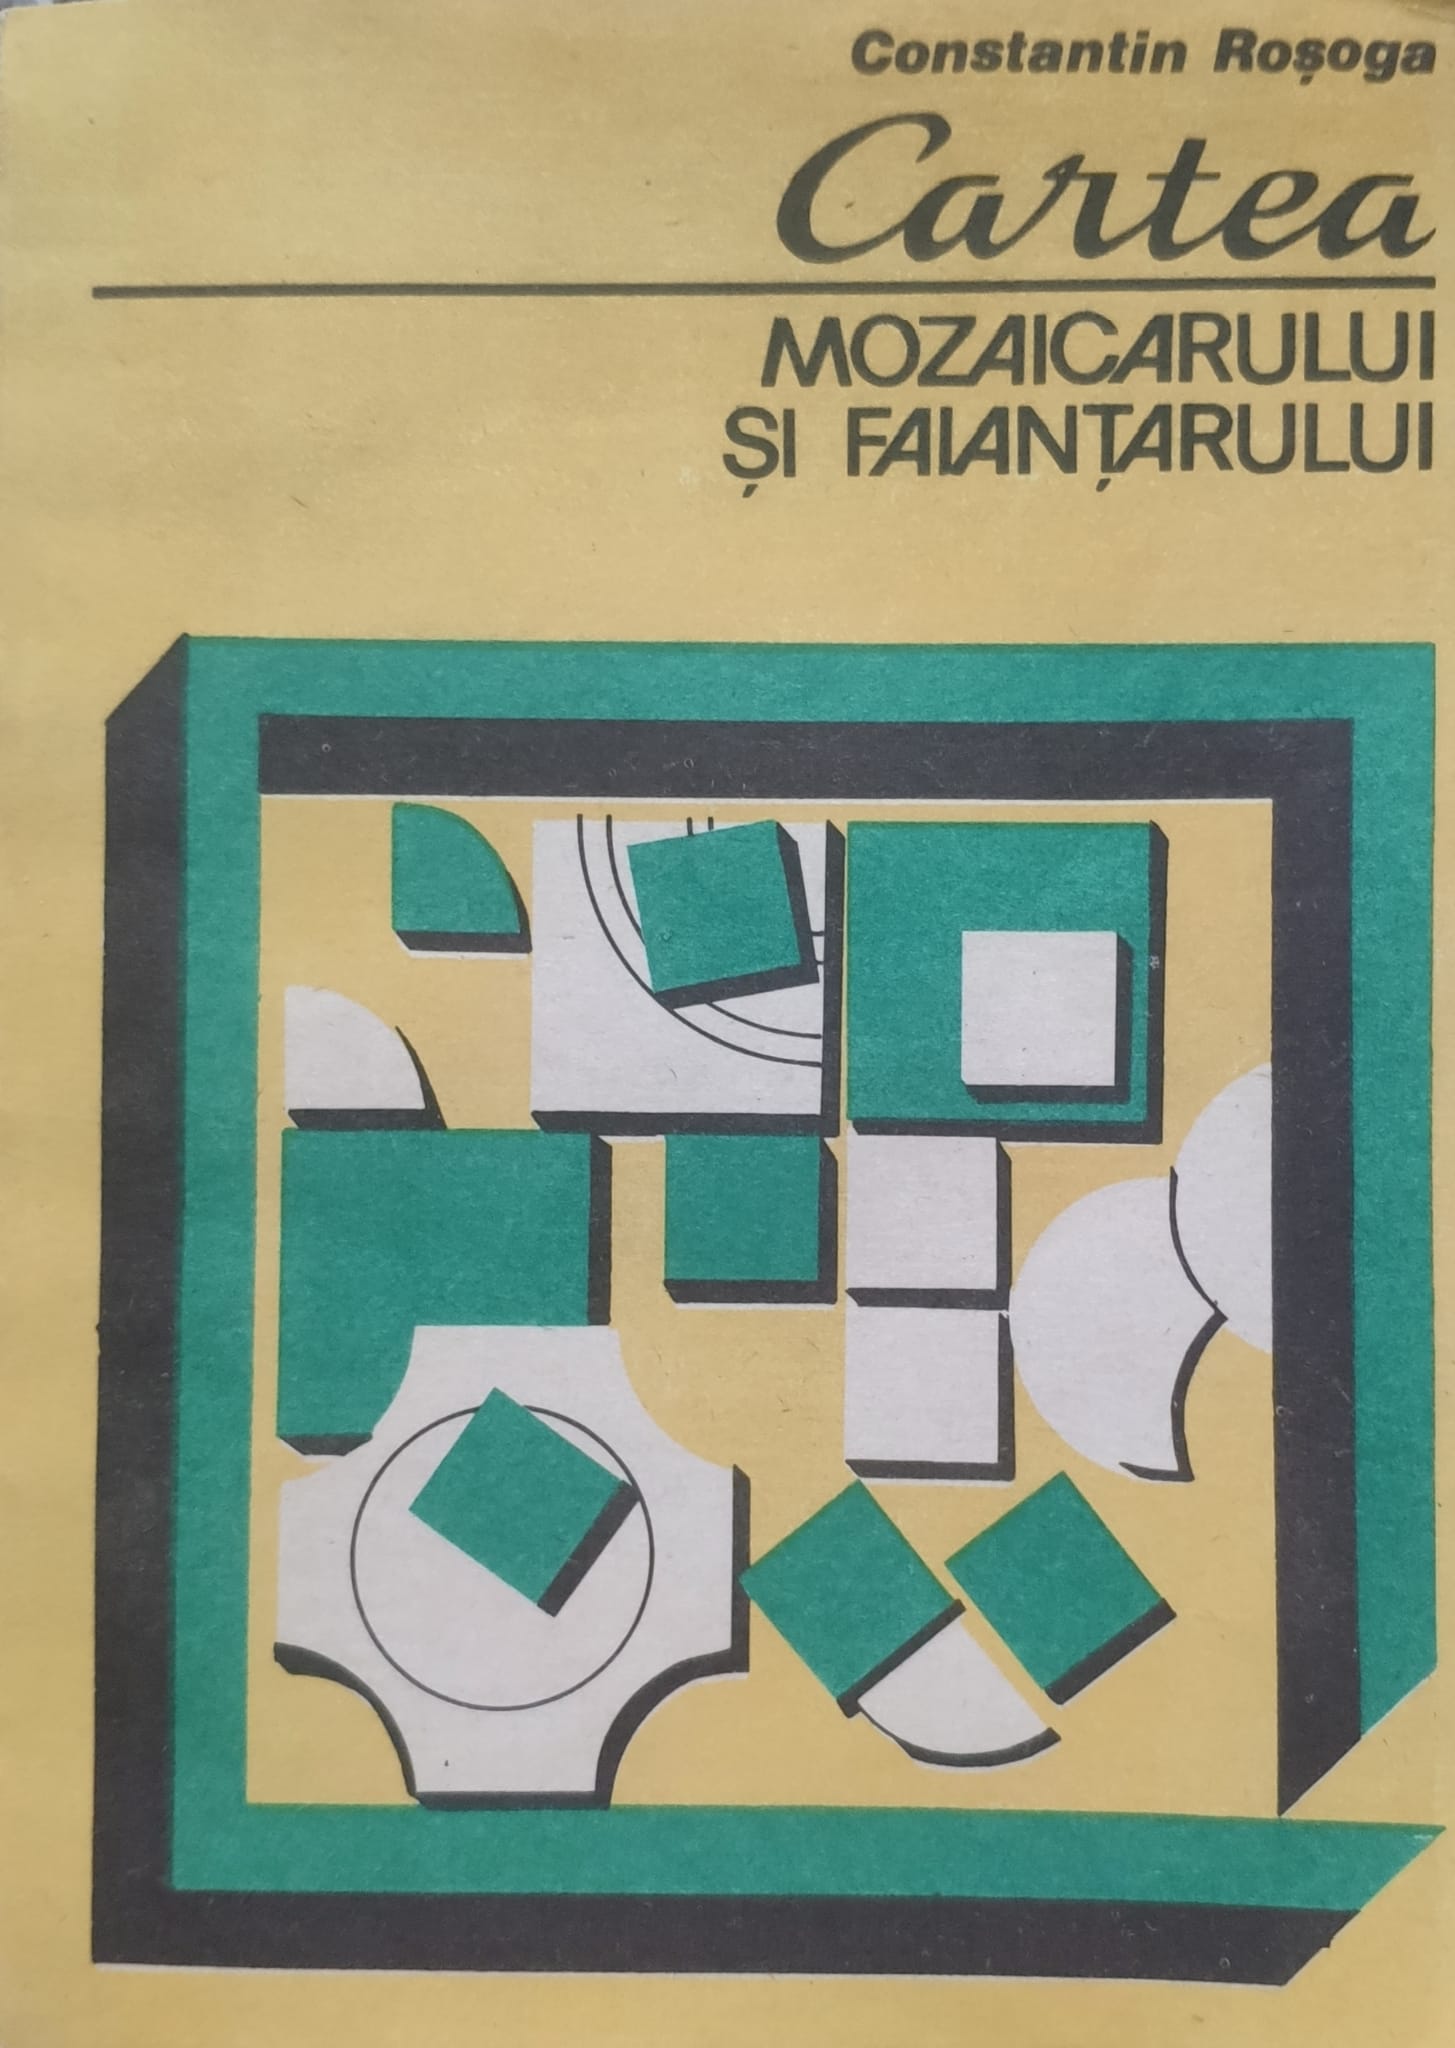 cartea mozaicarului si faiantarului                                                                  c. rosoga                                                                                           